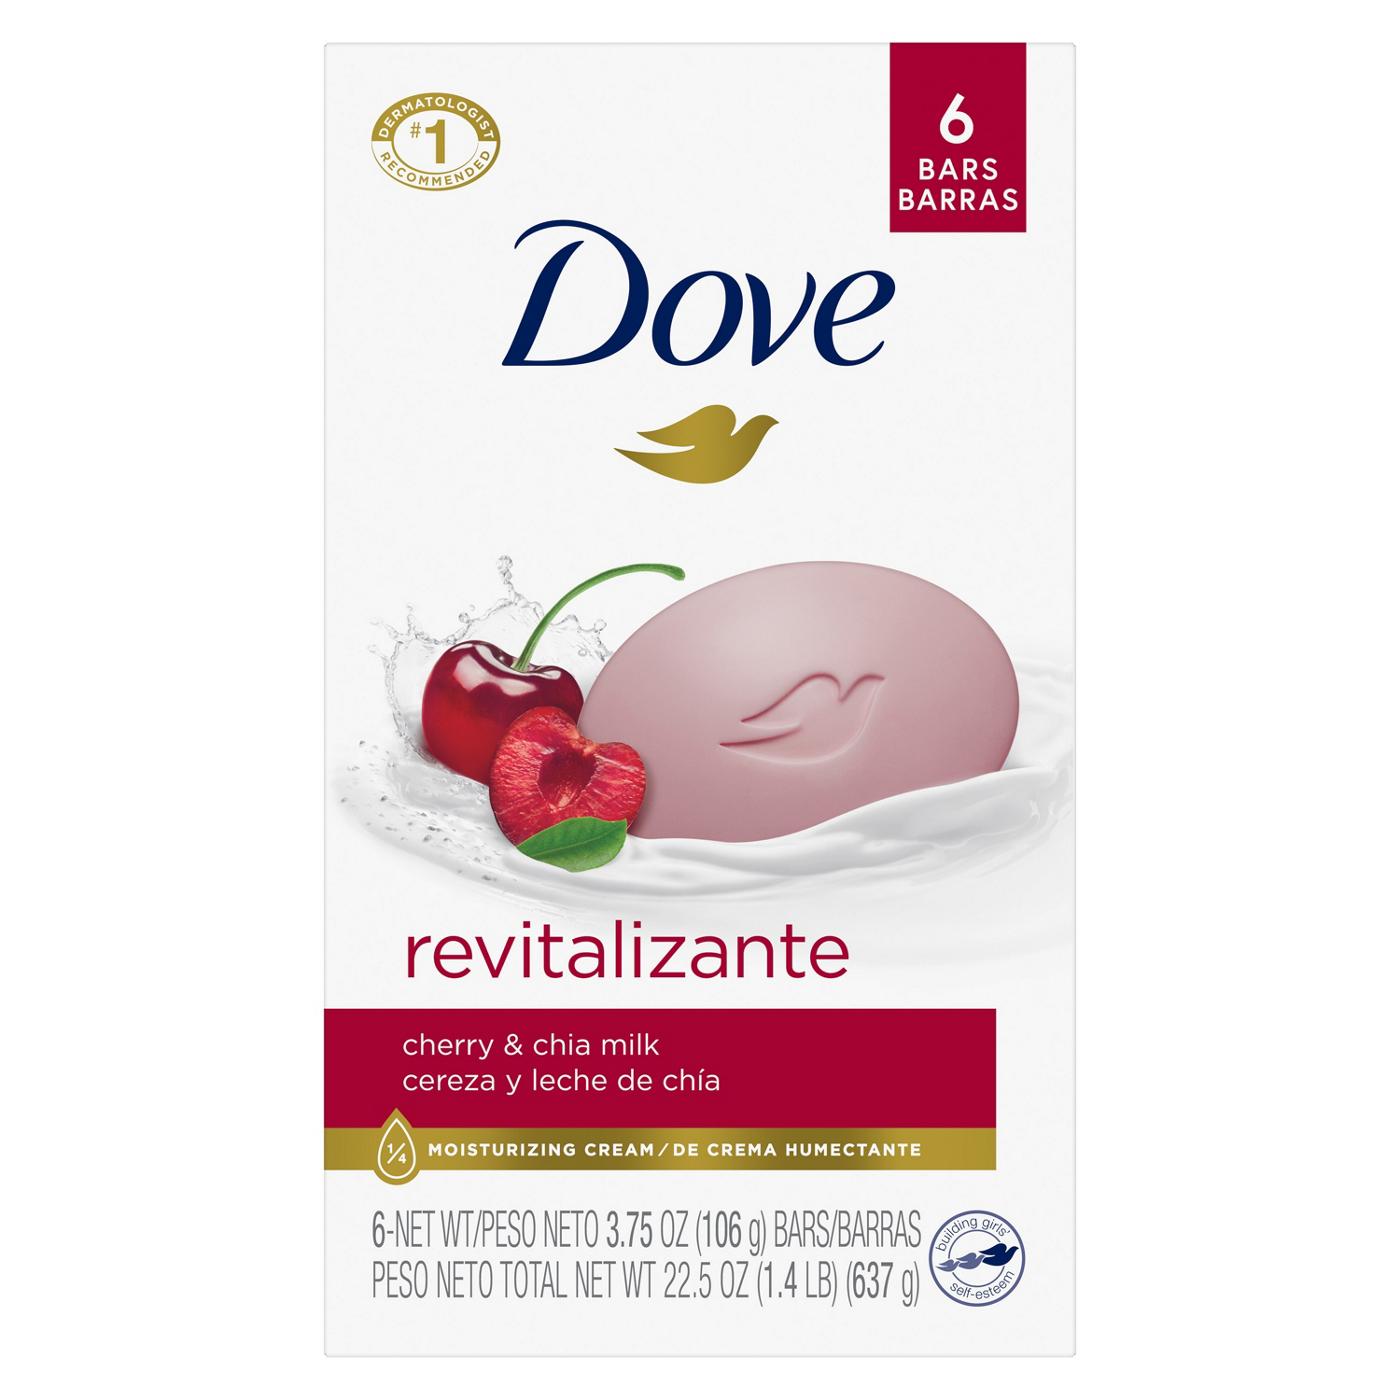 Dove Revitalizante Bar Soap - Cherry & Chia Milk; image 1 of 8